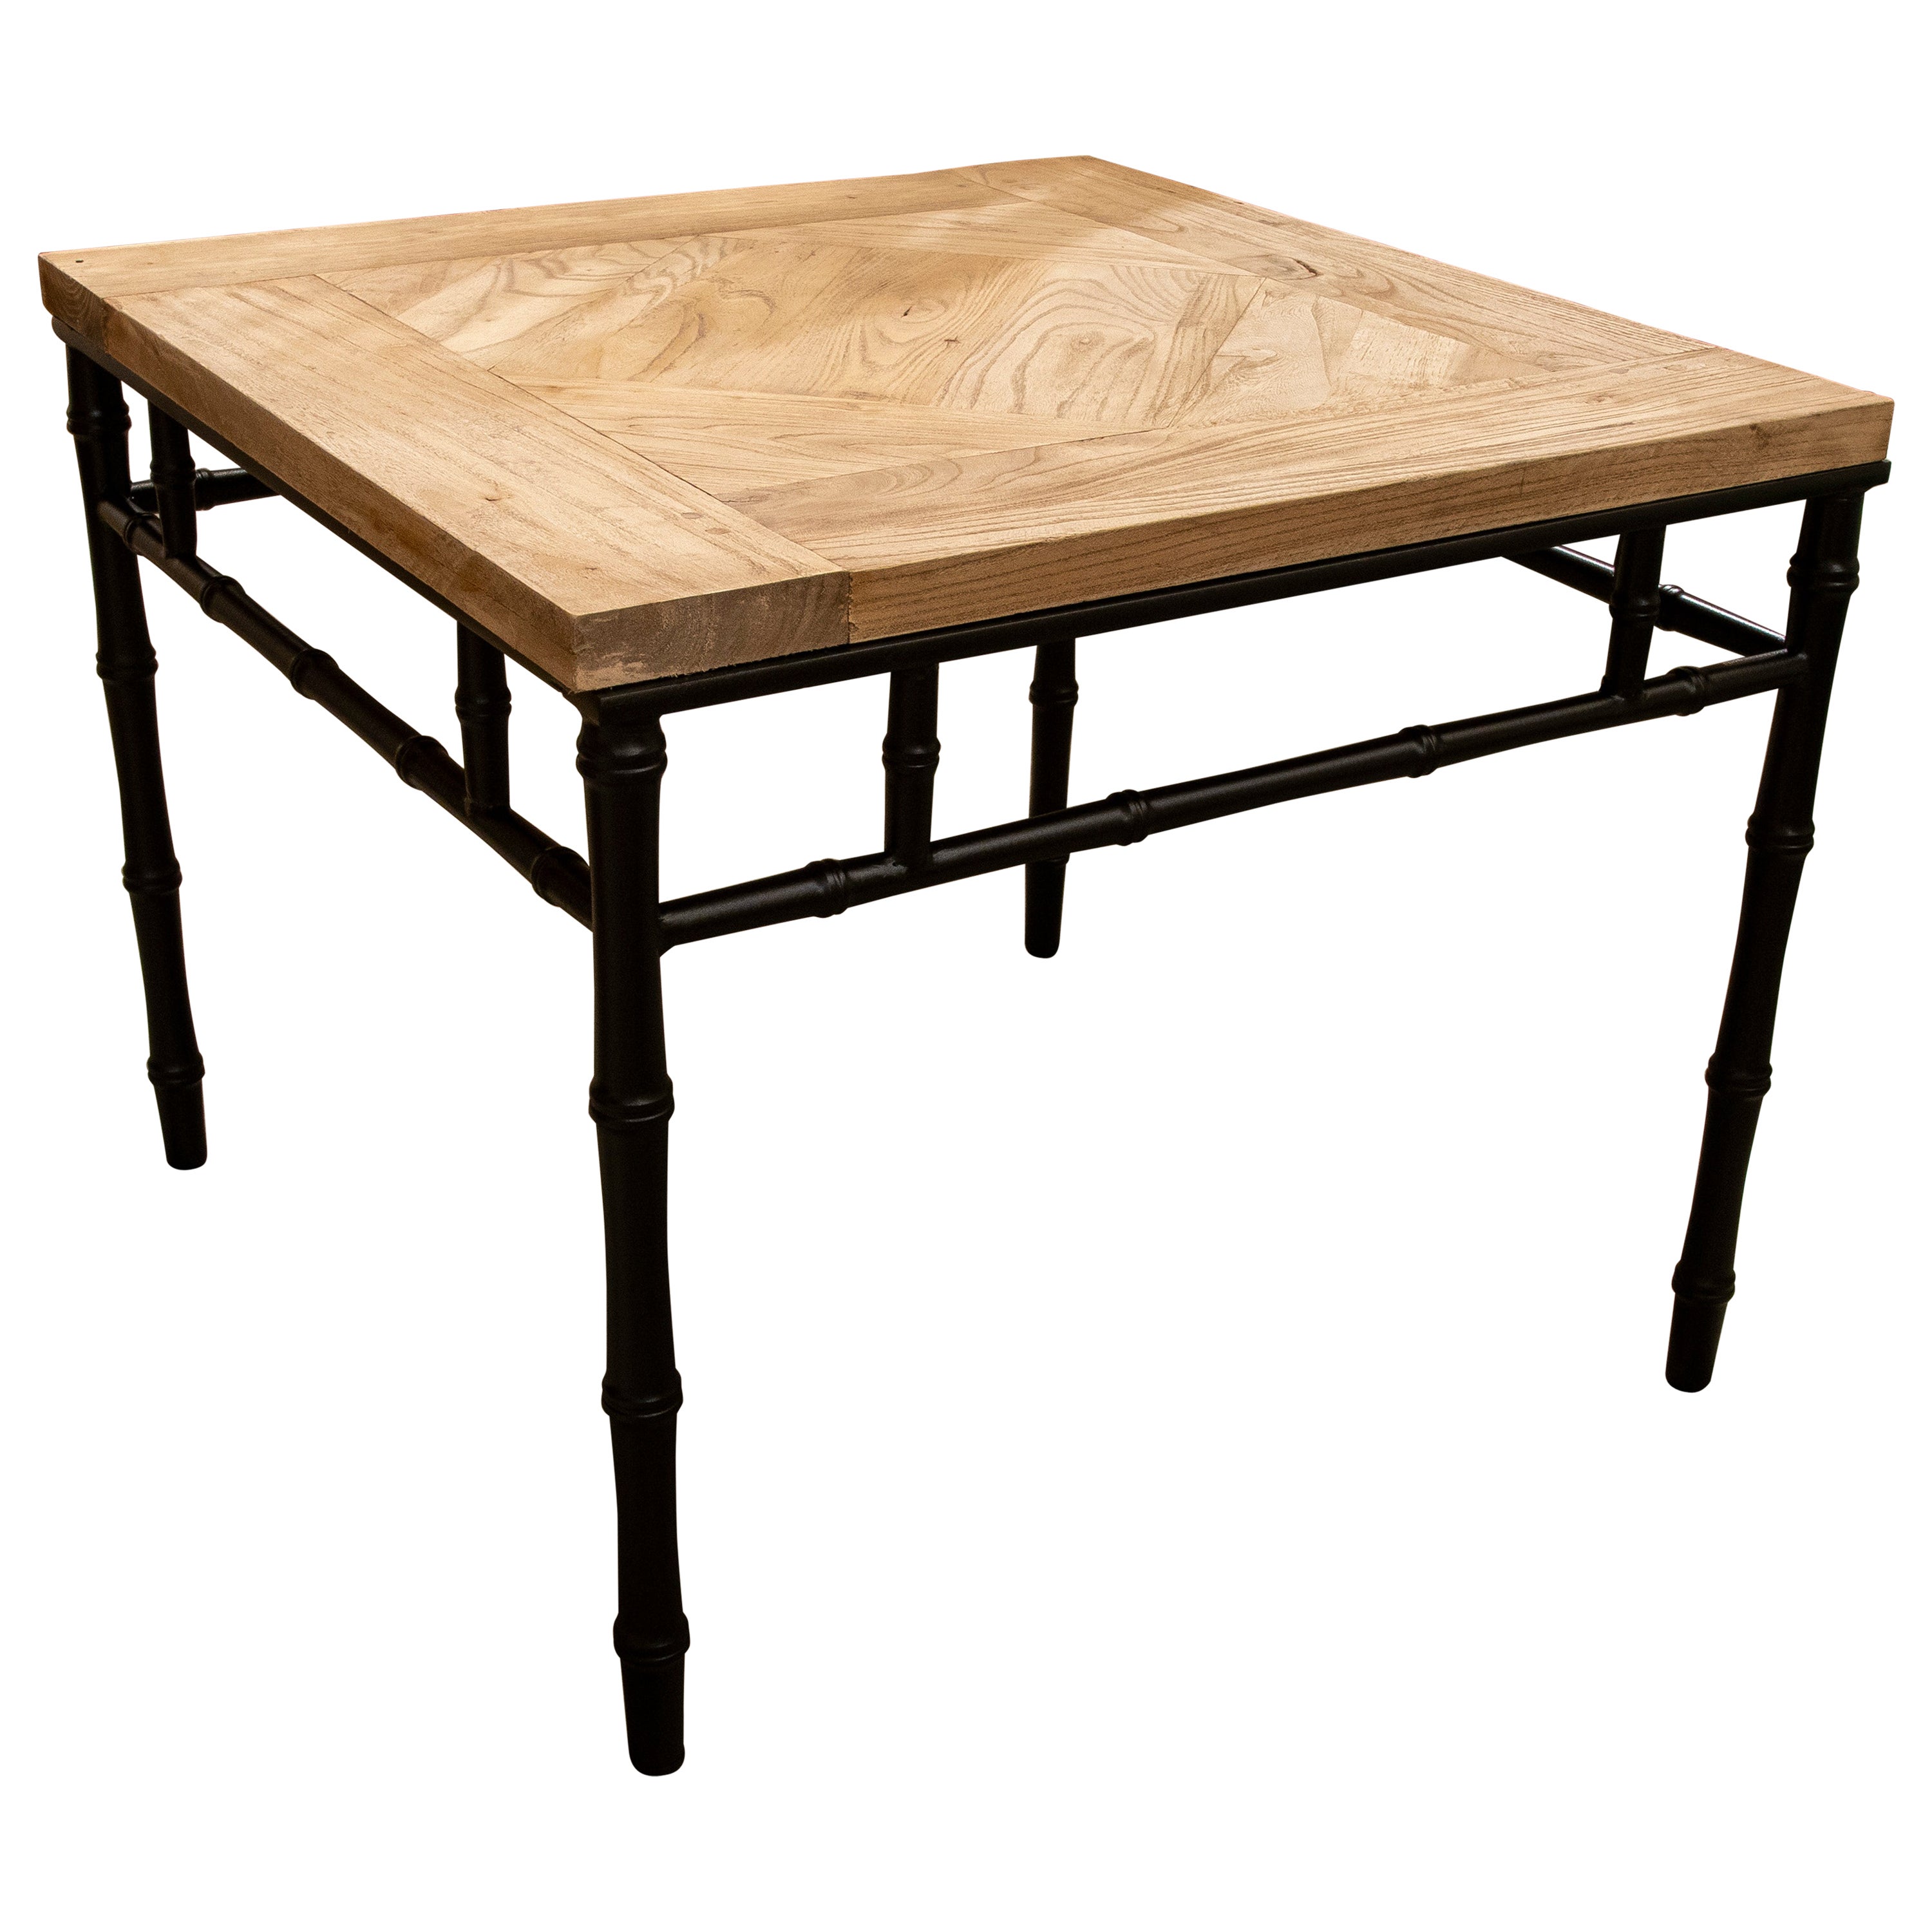 Table basse espagnole avec base en fer impressionnant bambou et plateau de table en orme ancien